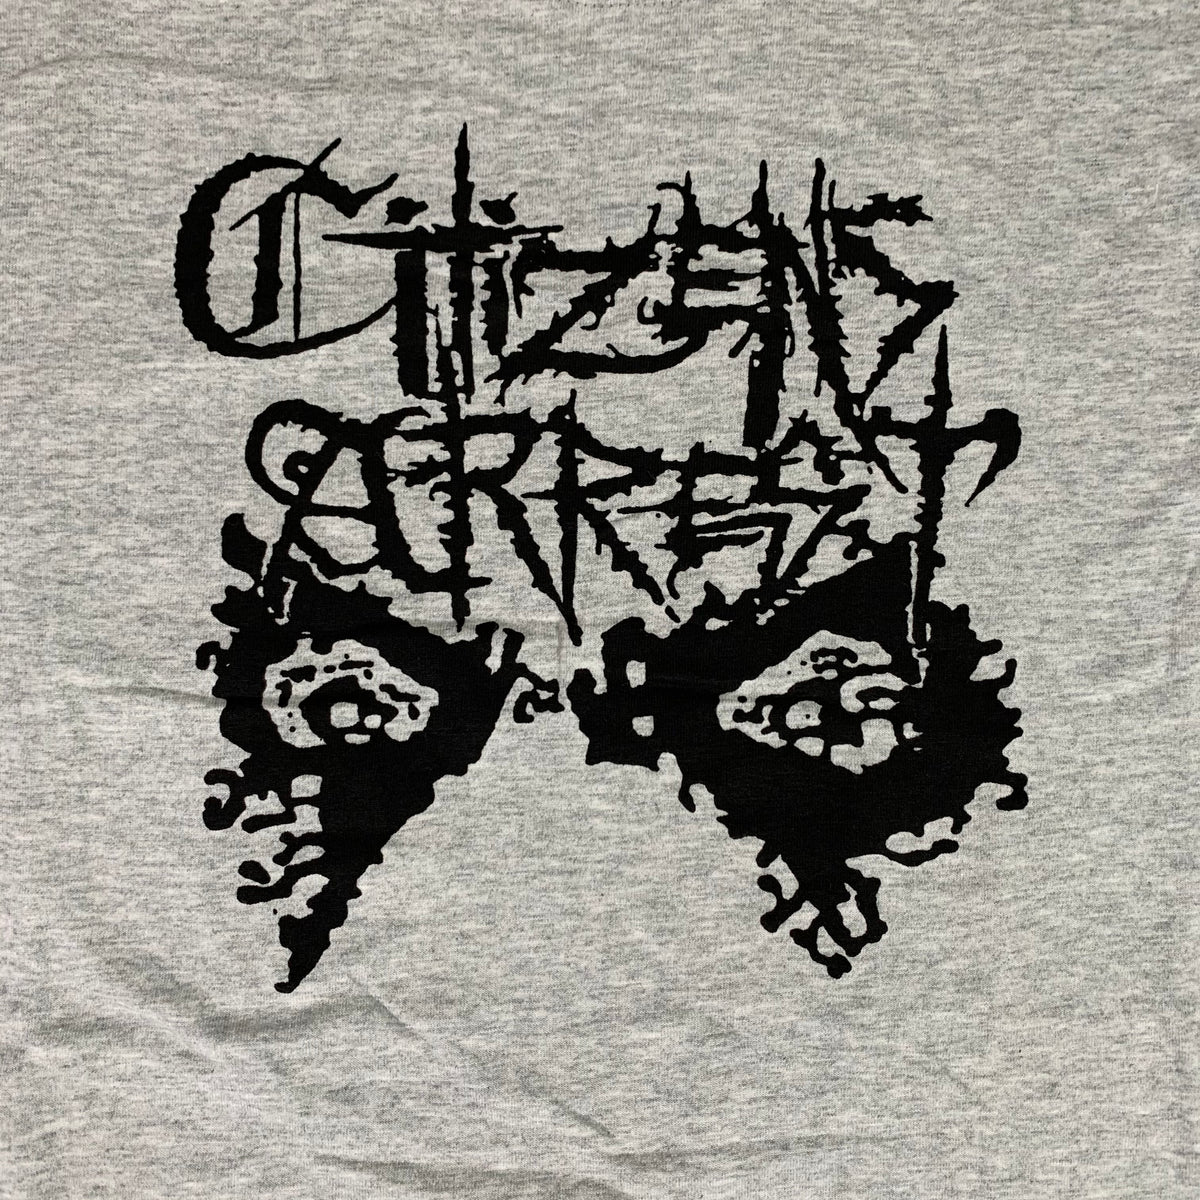 Vintage Citizens Arrest &quot;CXA&quot; T-Shirt